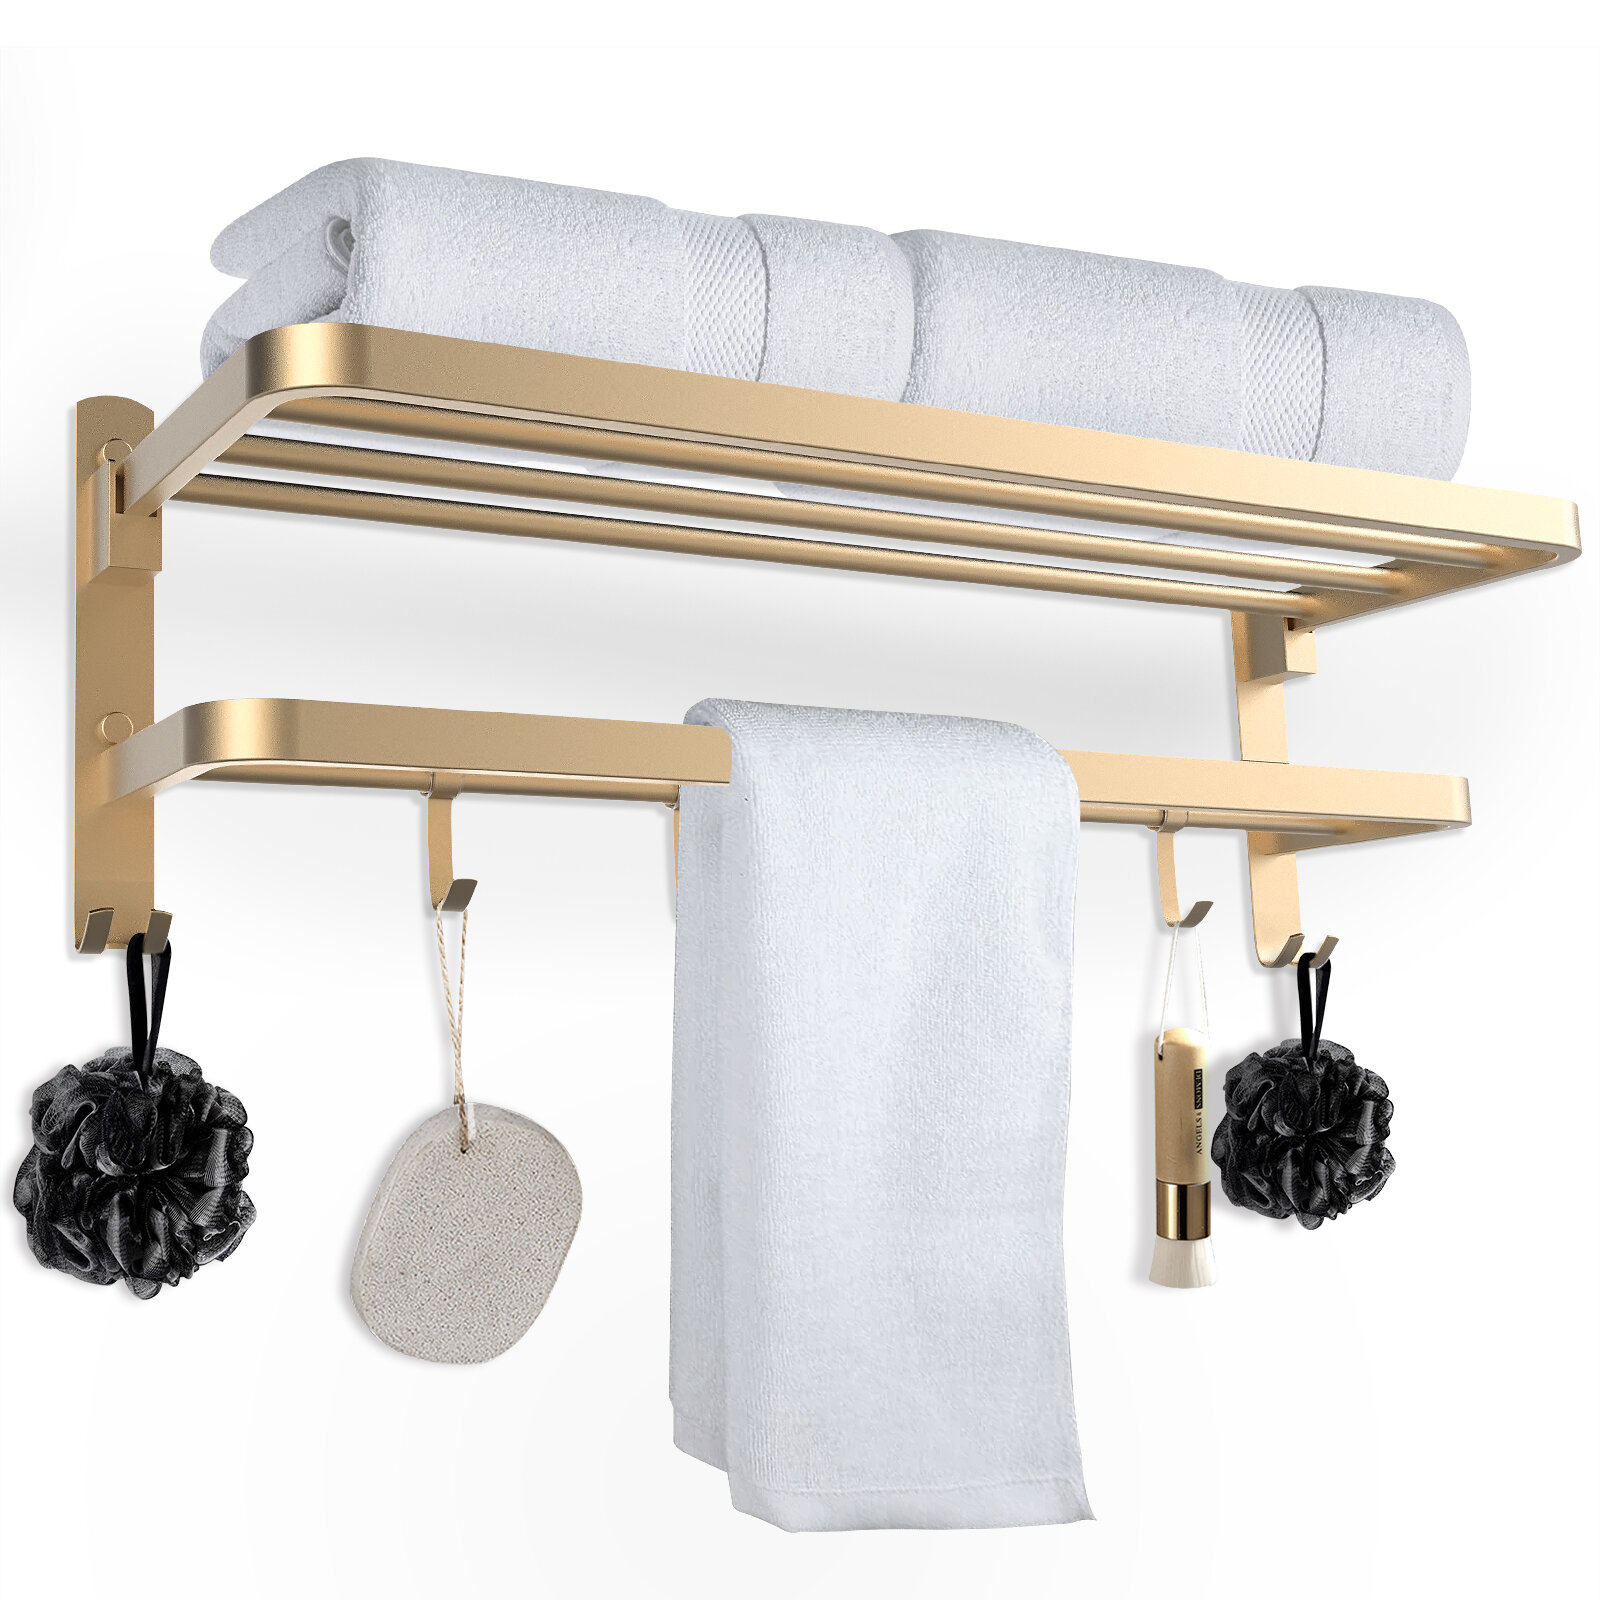  MyGift Black Metal Over The Door Hooks with Towel Rack Hanging  Organizer Storage, 4 Door Hanger Hooks for Coat, Bags and Shower  Accessories : Industrial & Scientific